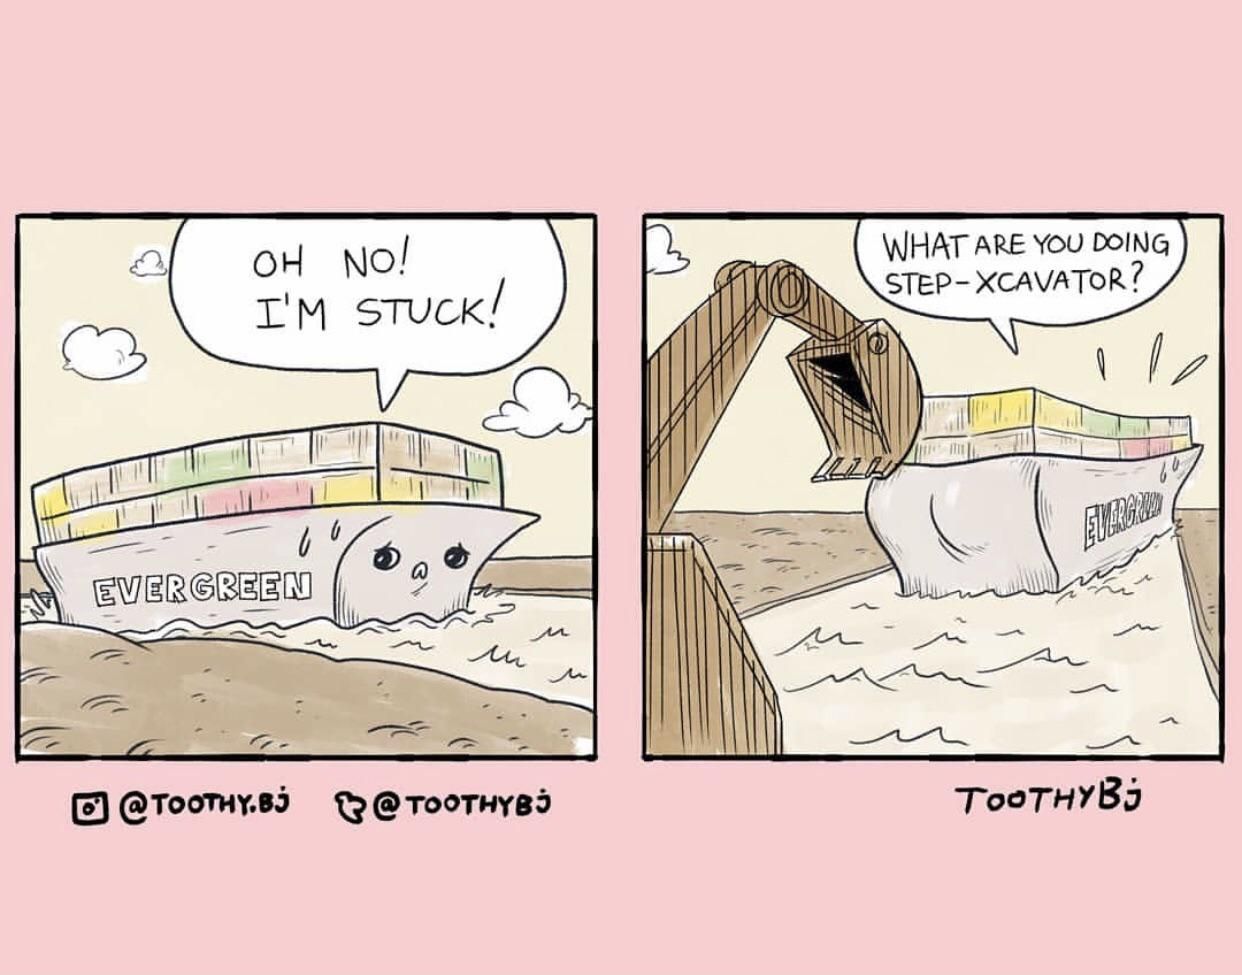 I’m stuck !